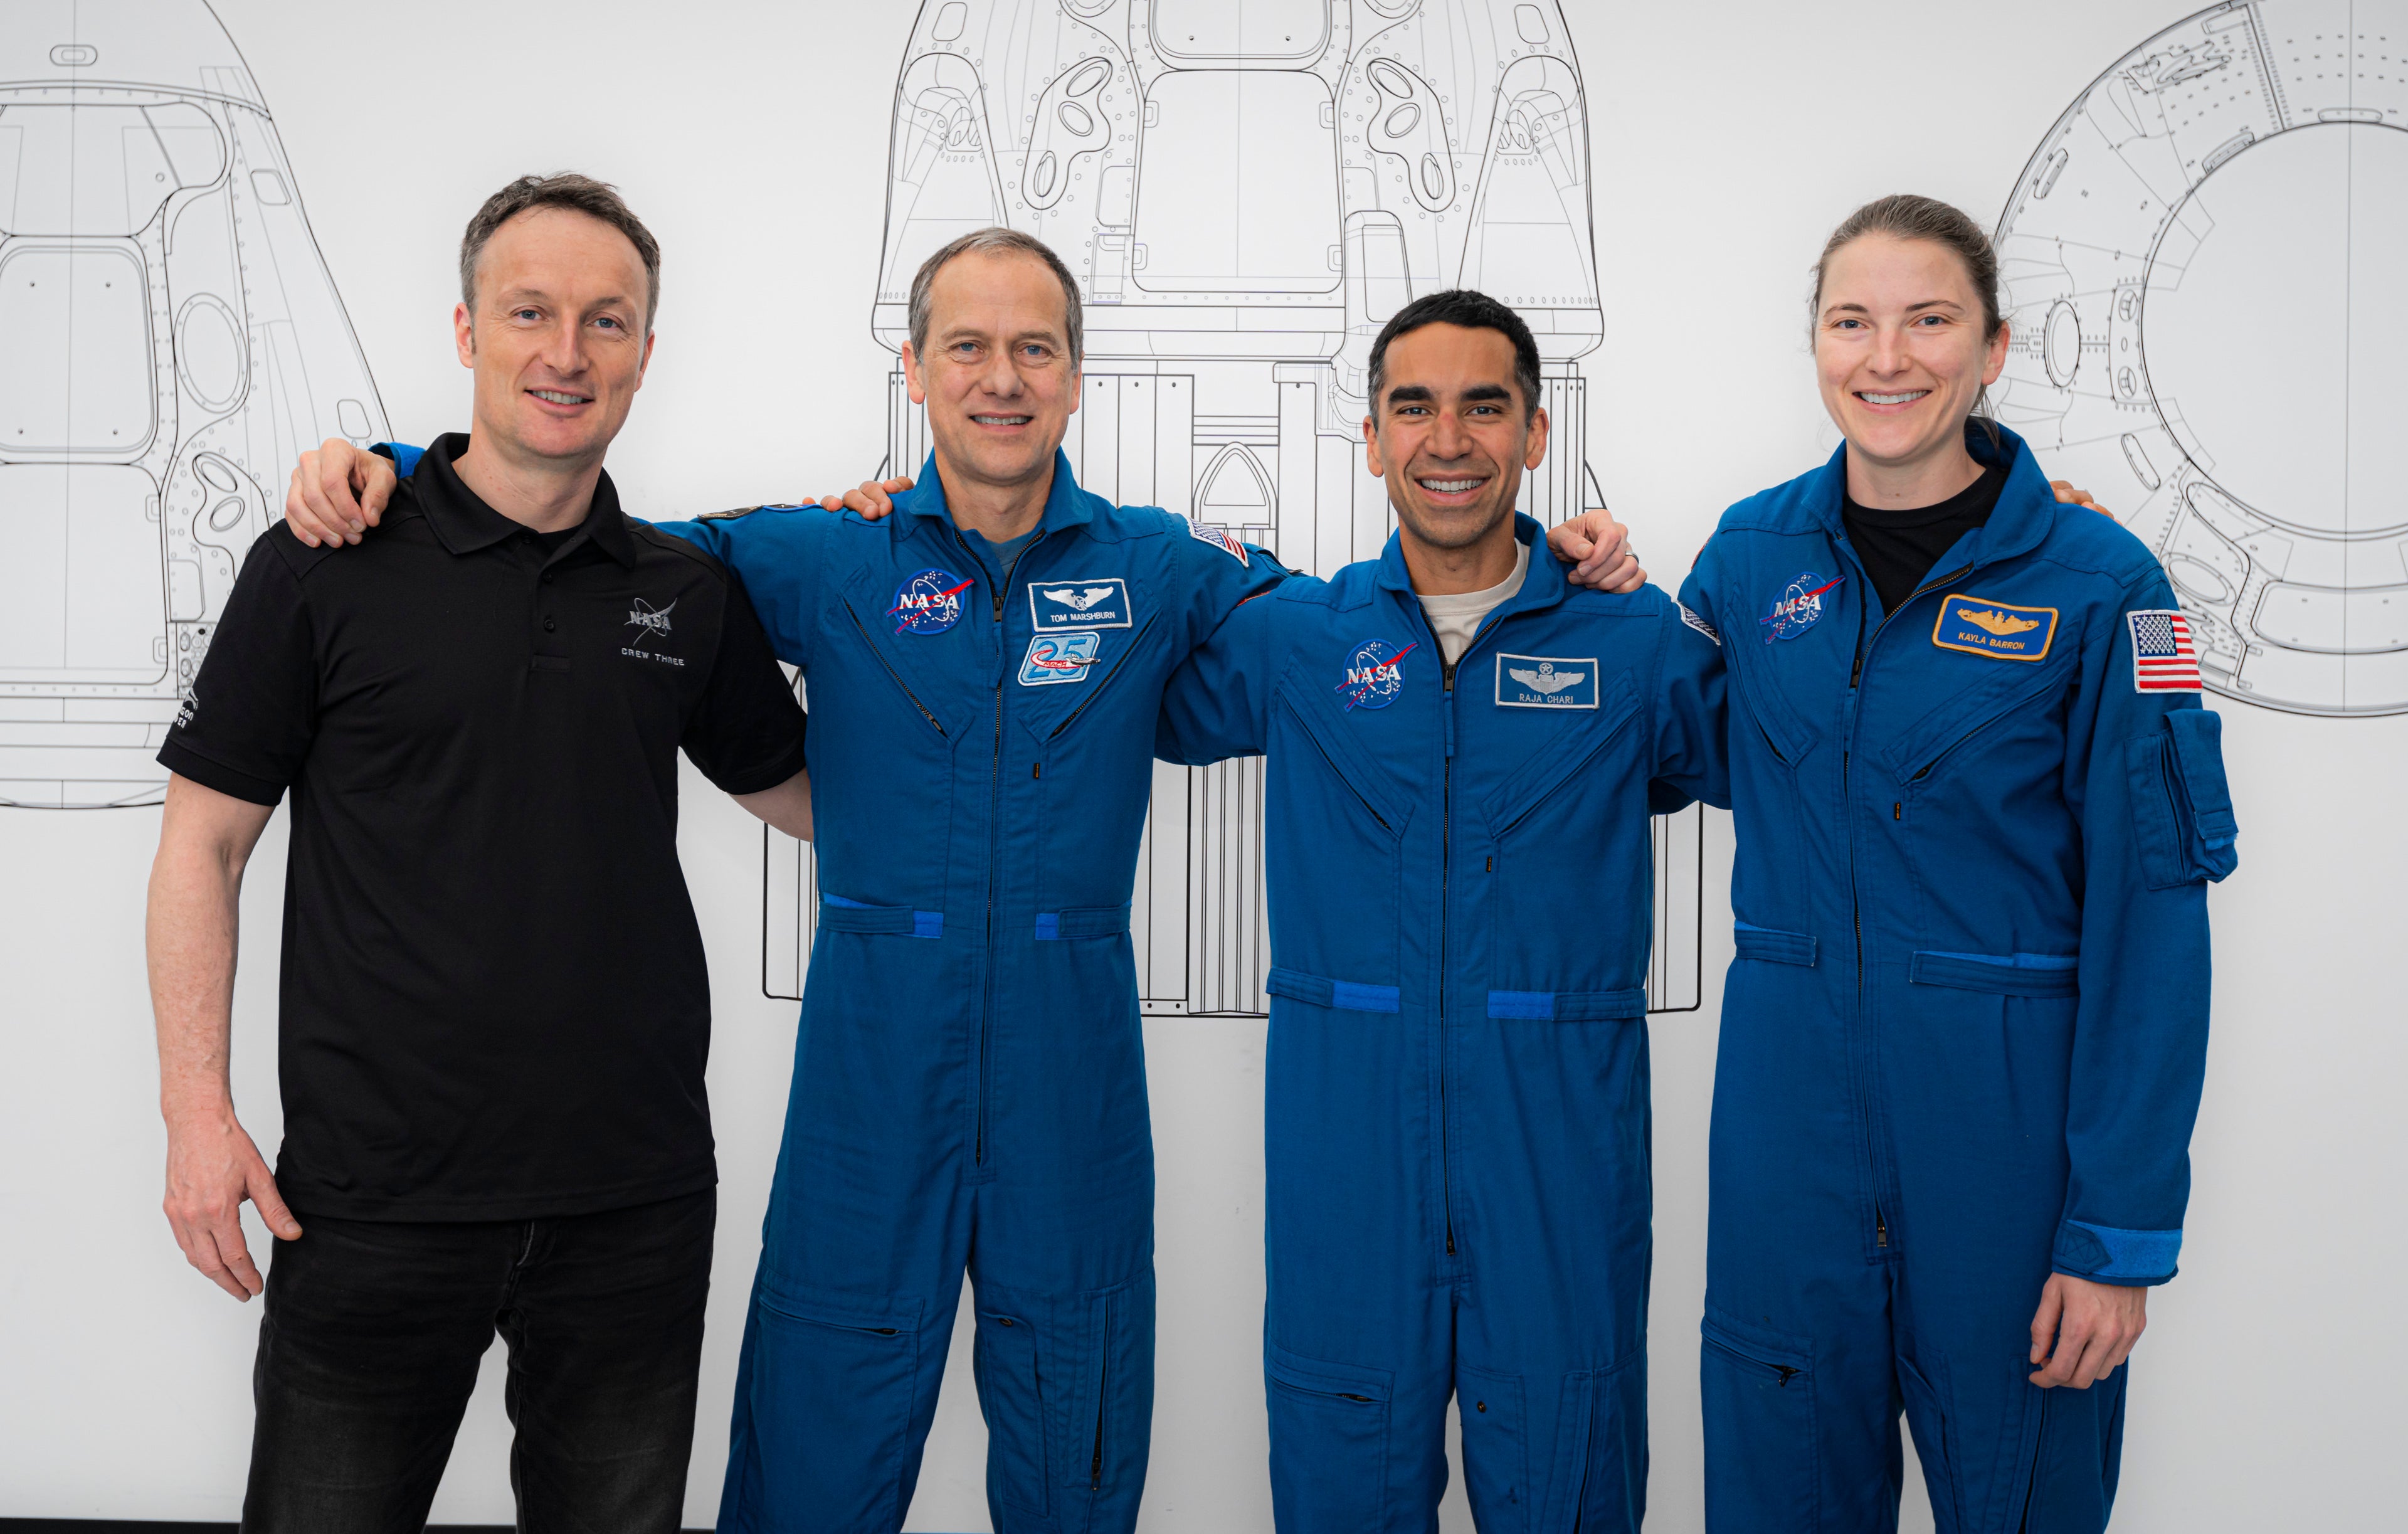 Los miembros de la misión Crew-3 de la Nasa (el astronauta de la Esa Matthias Maurer, y los astronautas de la Nasa Raja Chari, Tom Marshburn y Kayla Barron) antes de abandonar la Tierra en 2021